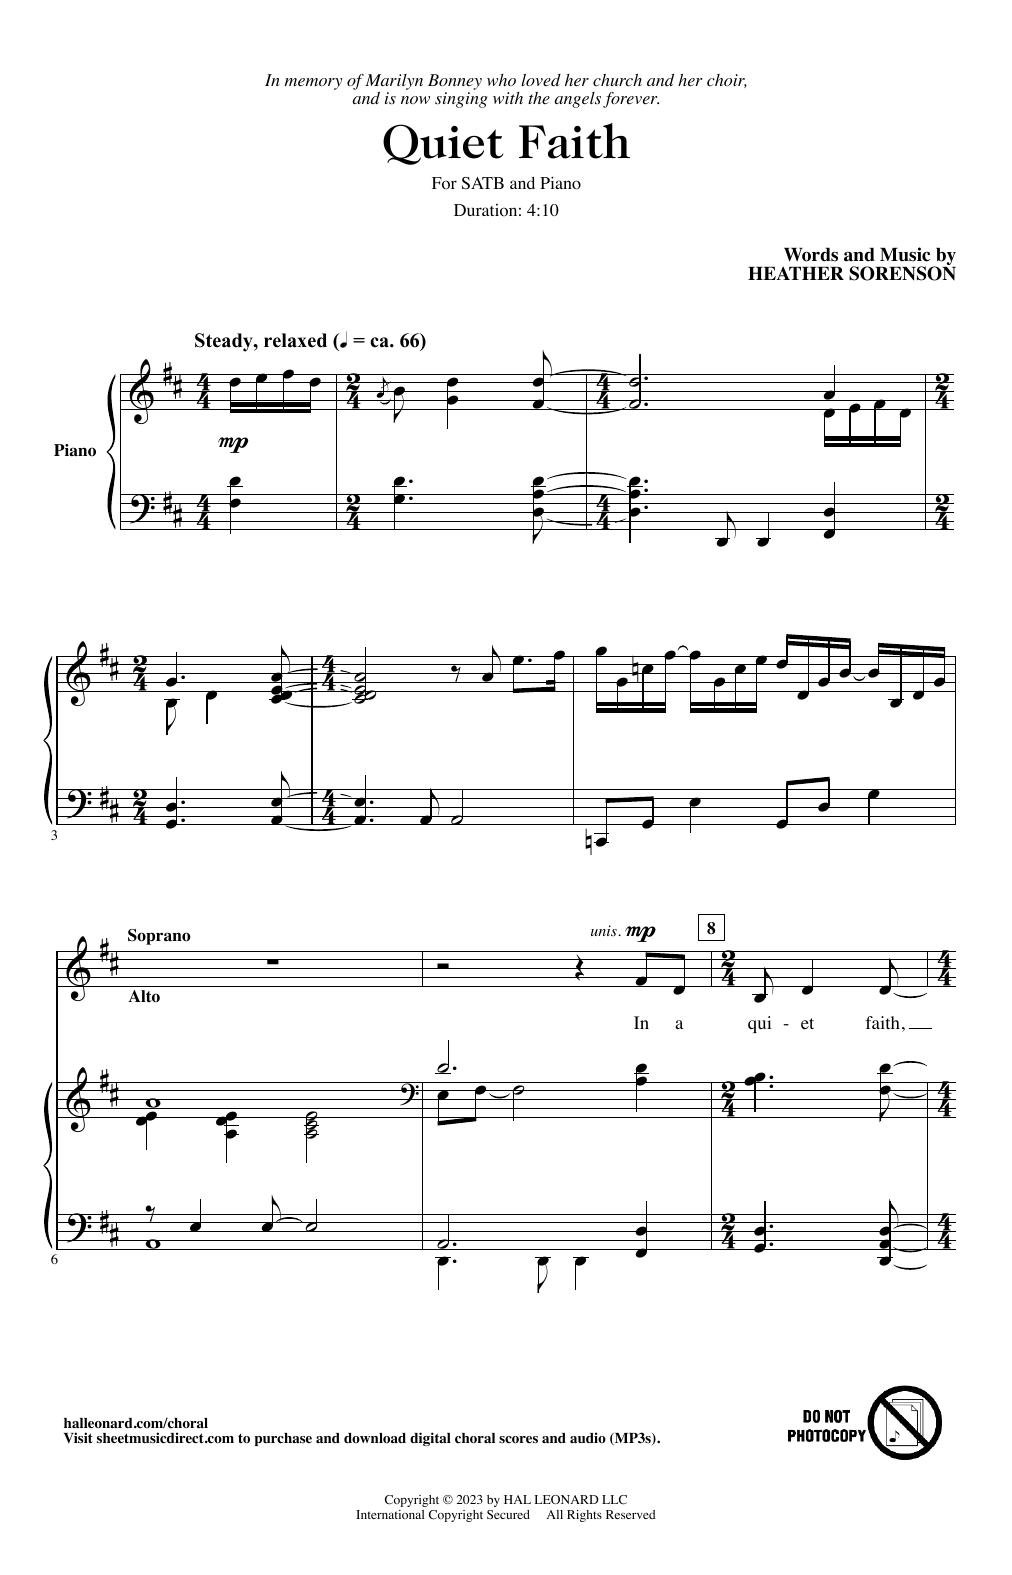 Heather Sorenson Quiet Faith Sheet Music Notes & Chords for SATB Choir - Download or Print PDF